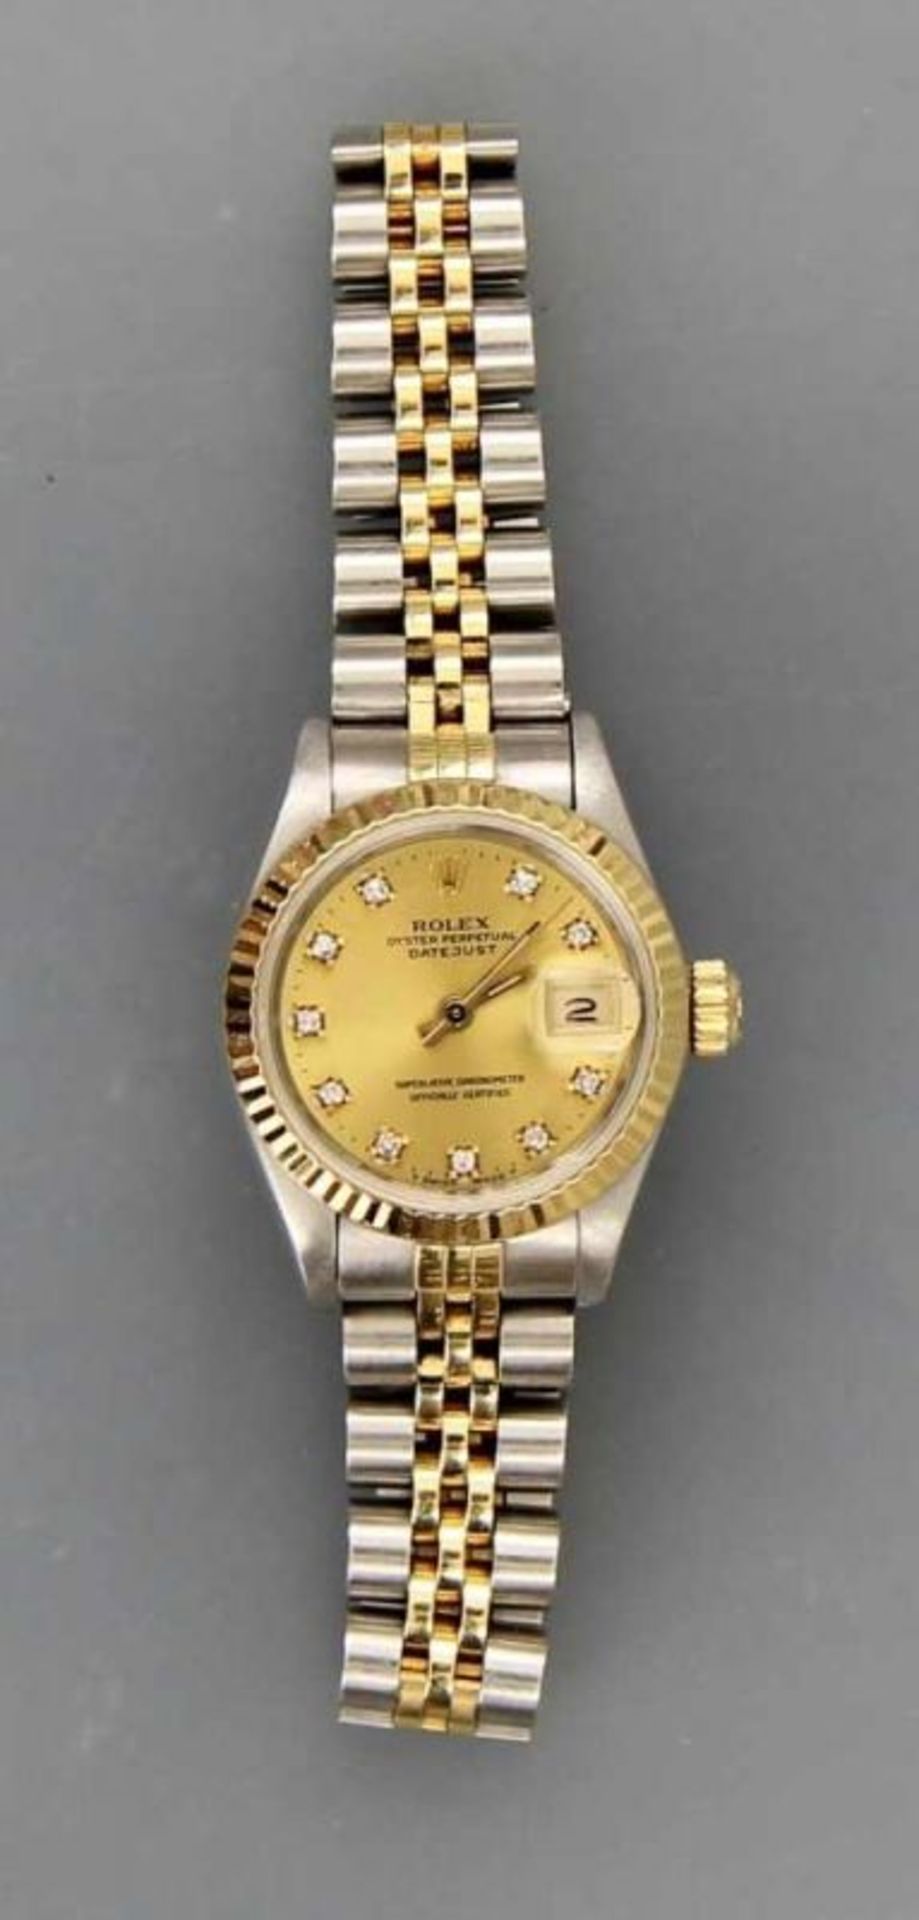 DAU "Rolex Oyster Perpetual Date Superlative Chronometer" Gehäuse und Band Stahl und Gelbgold 18kt., - Image 2 of 3